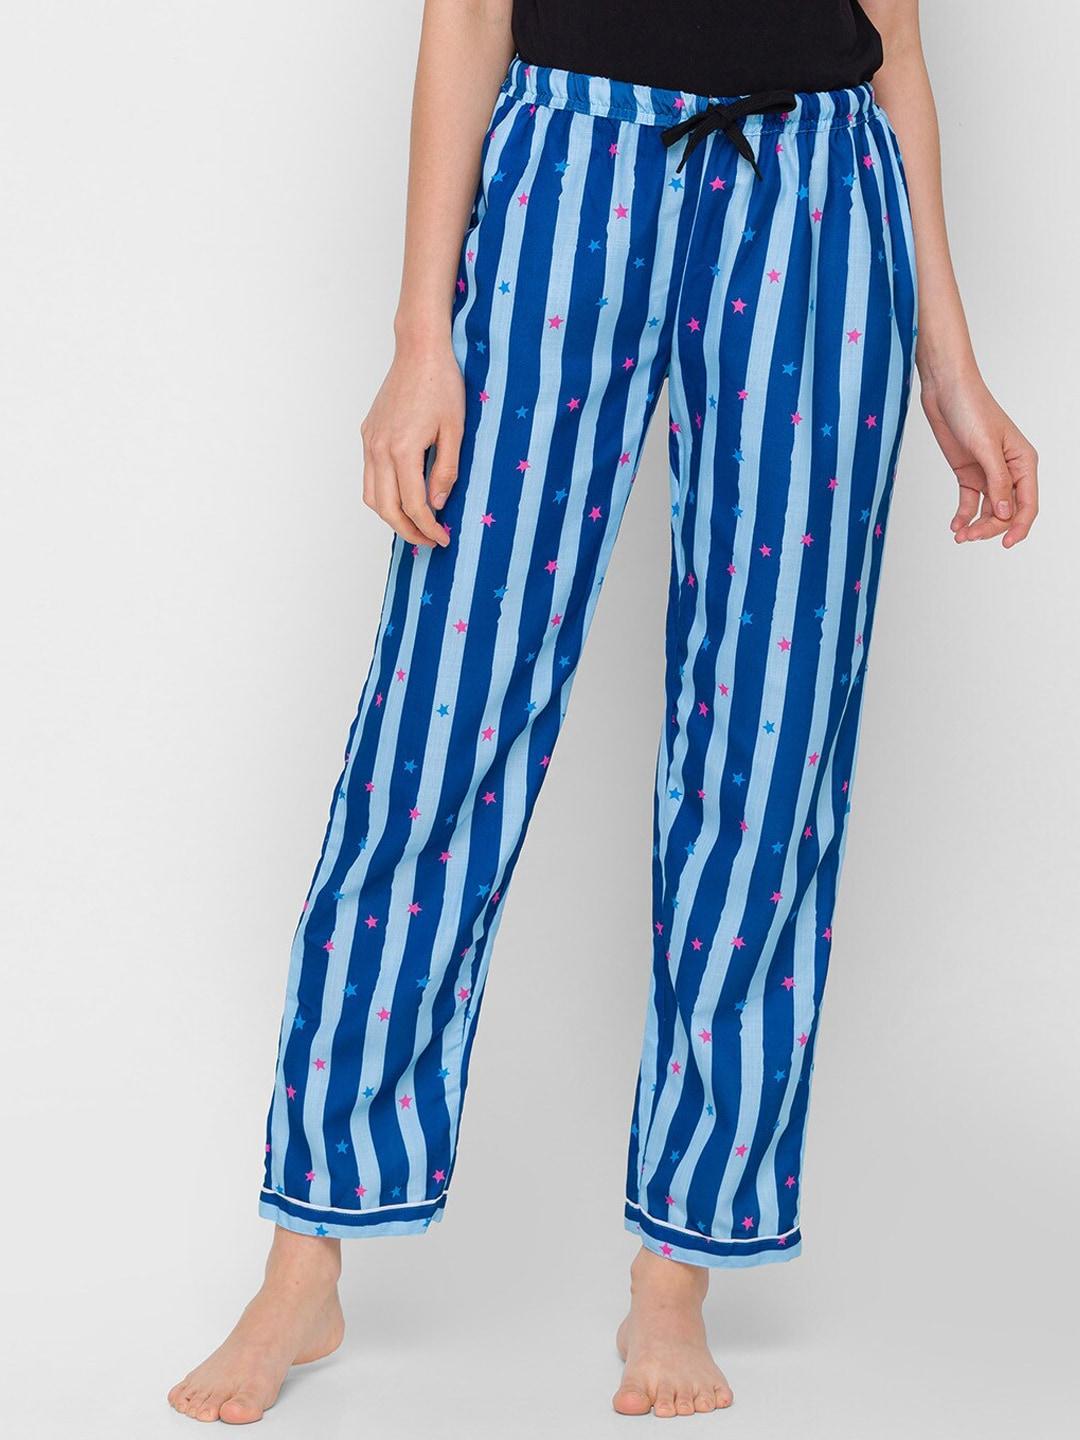 fashionrack women striped cotton lounge pants